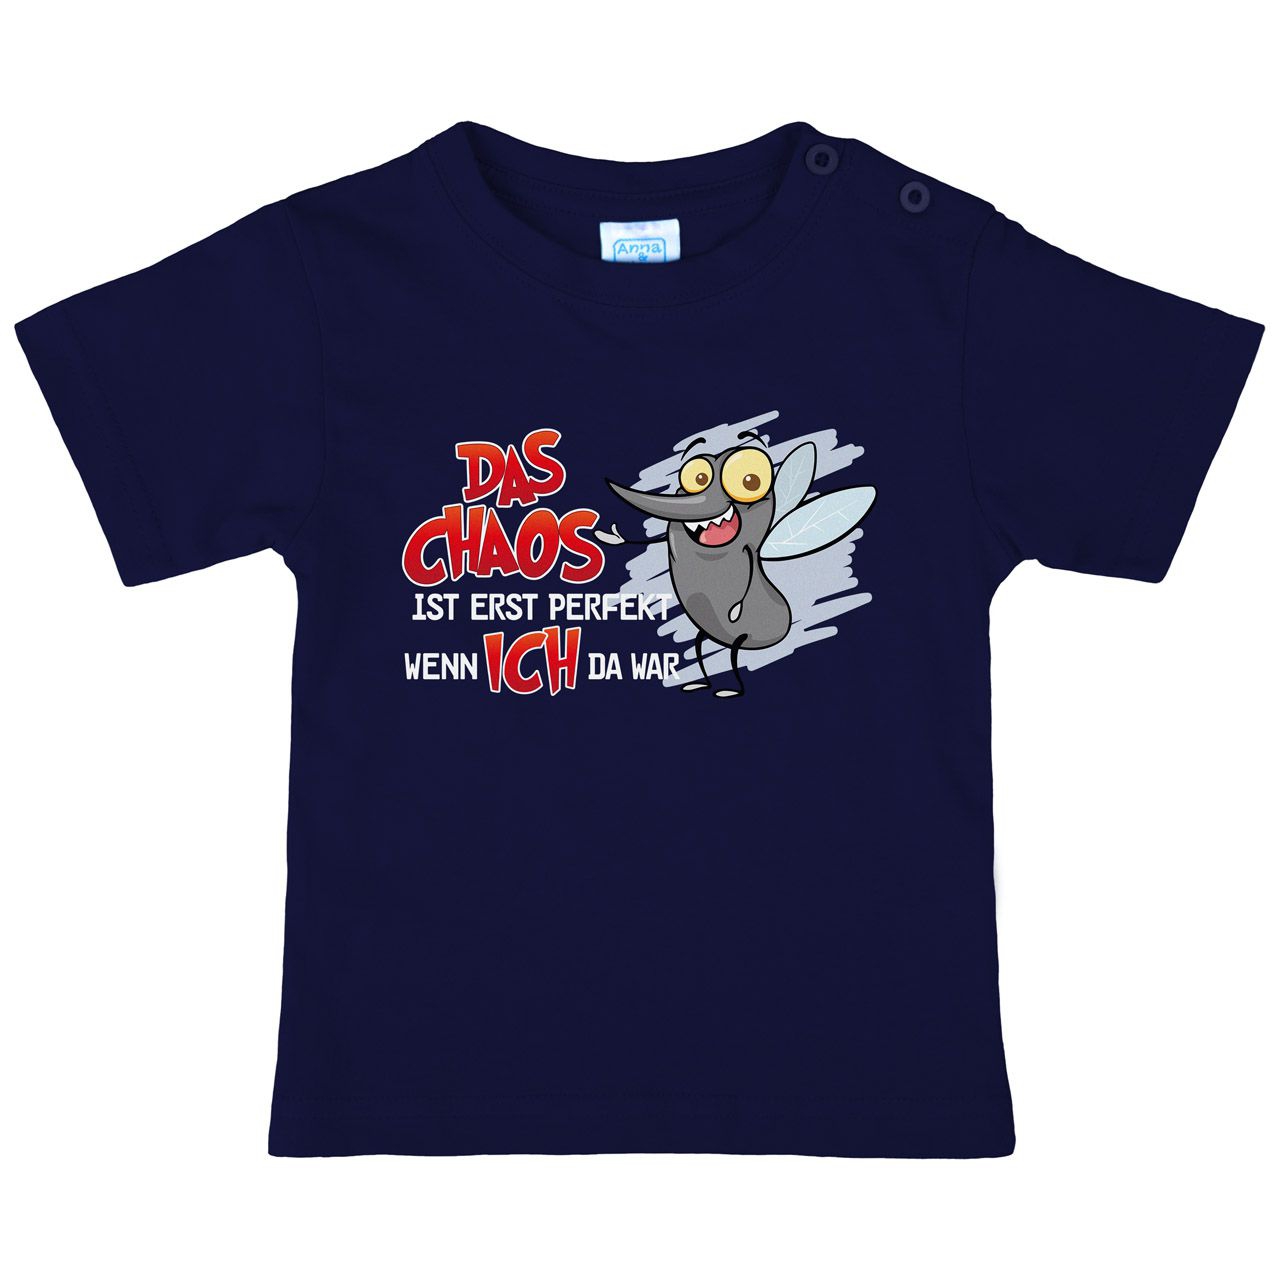 Das Chaos ist perfekt Kinder T-Shirt navy 80 / 86